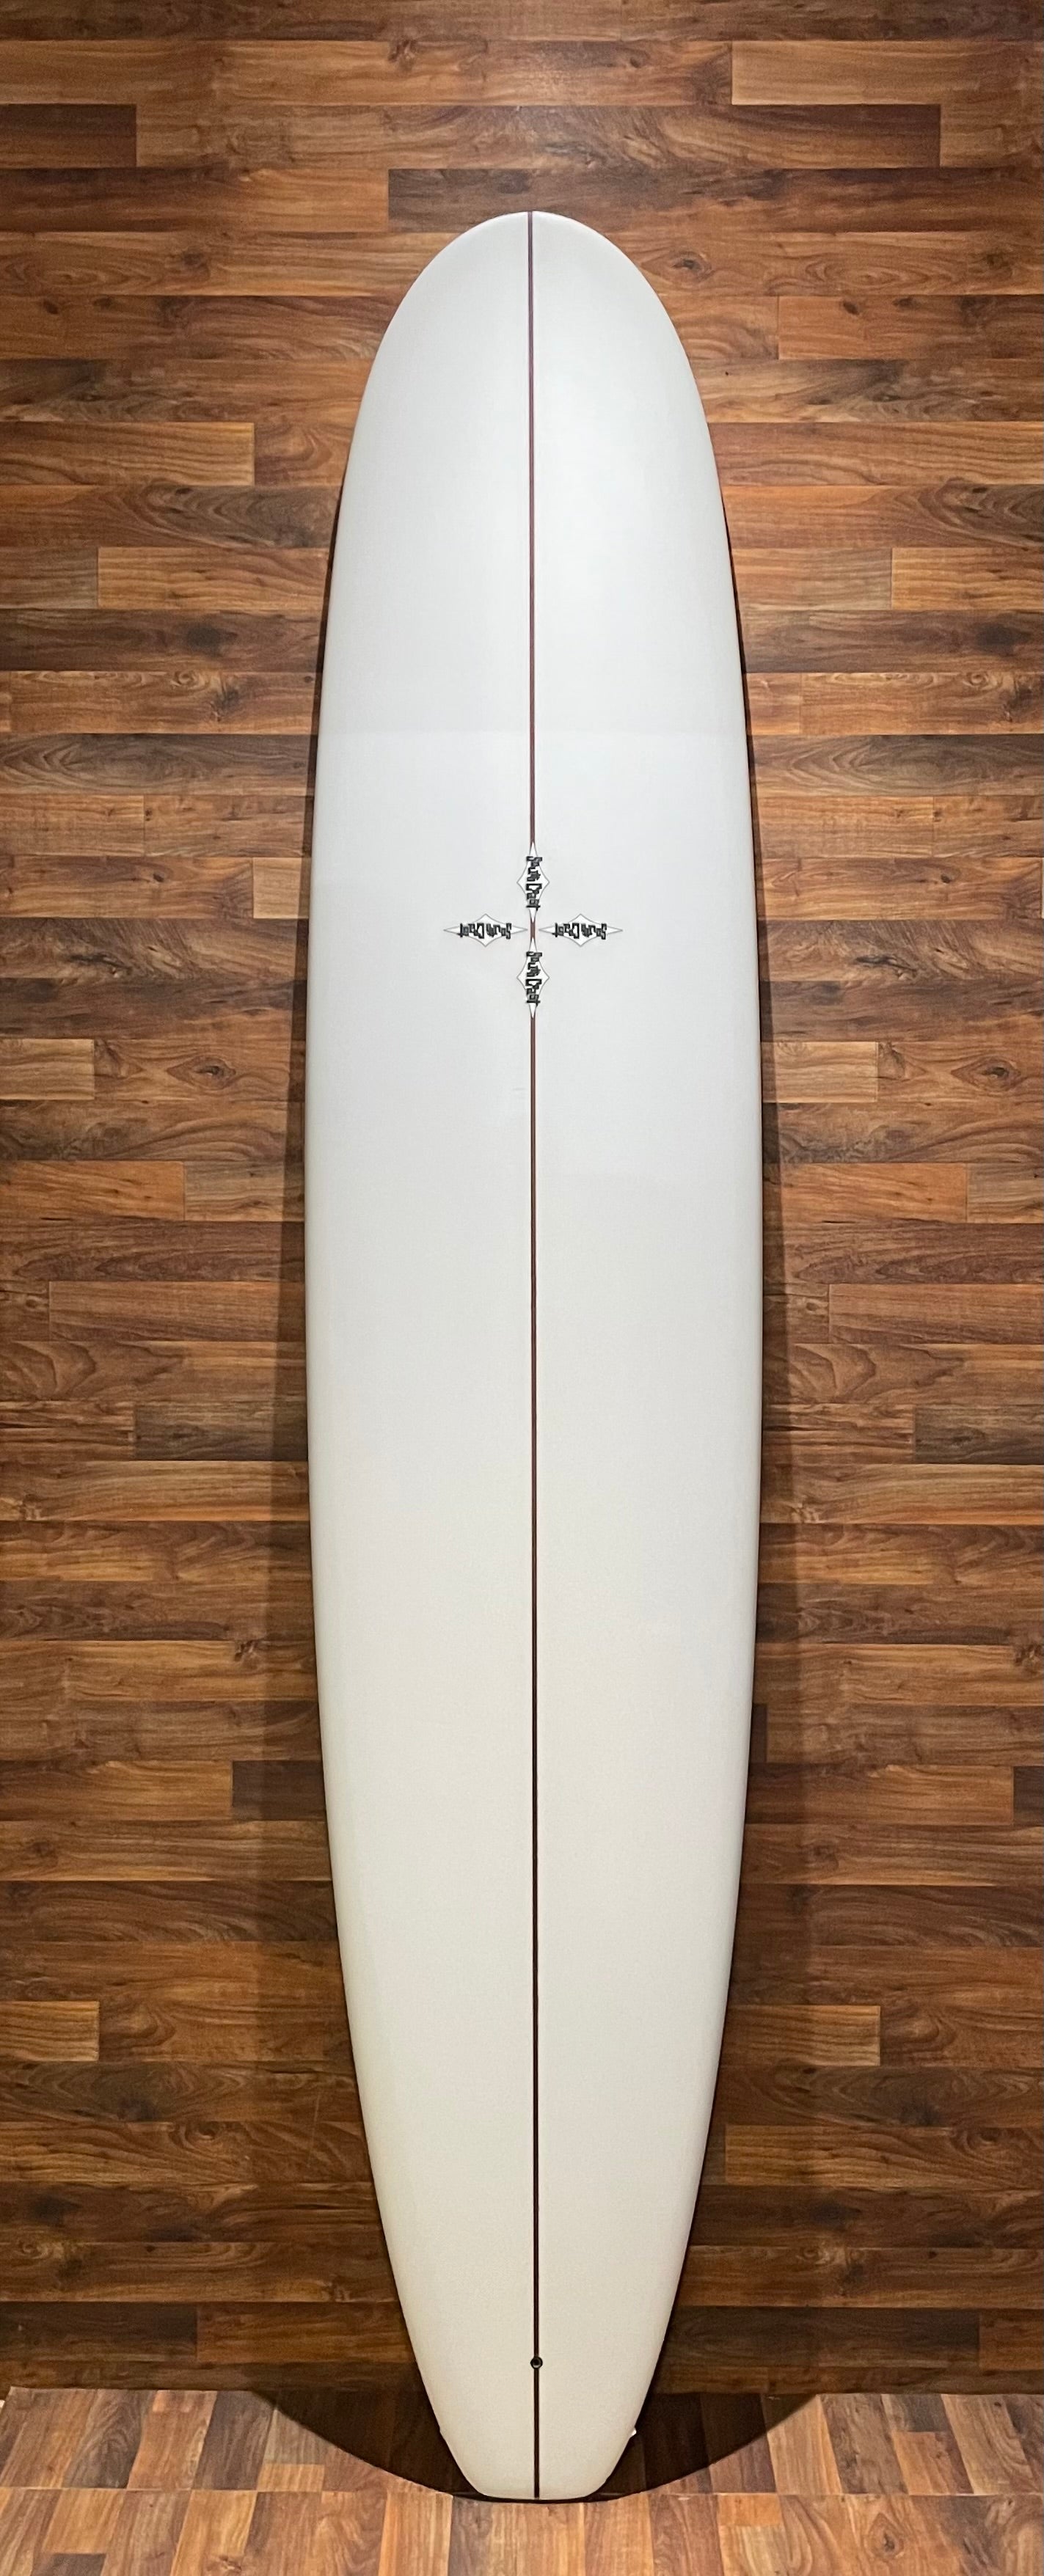 South Coast Cr3 9'0" Surfboard